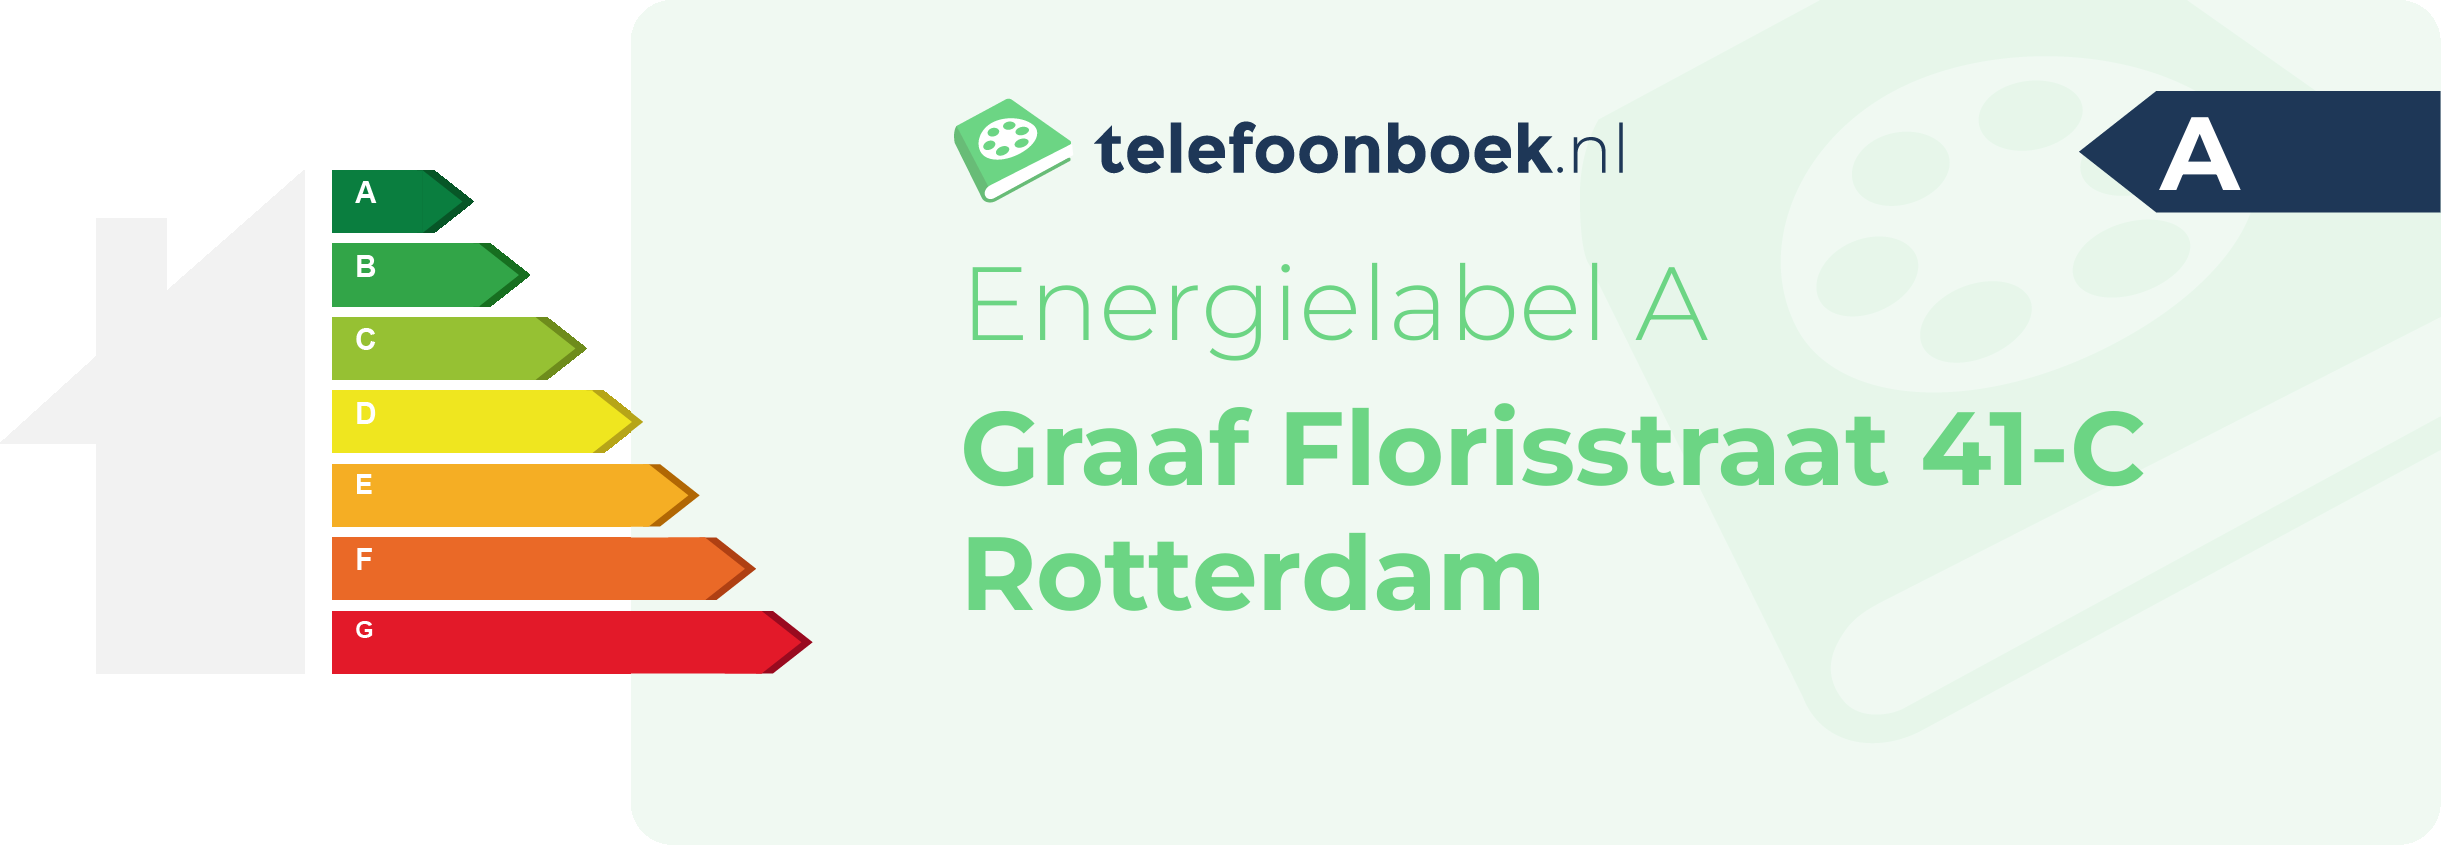 Energielabel Graaf Florisstraat 41-C Rotterdam